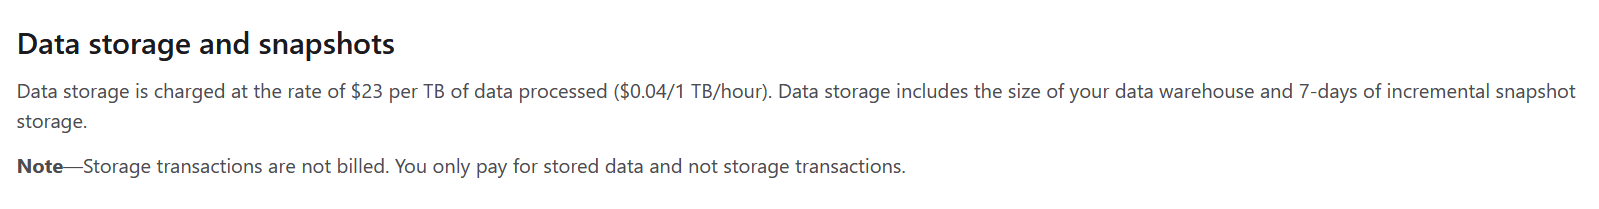 Data storage and snapshots.